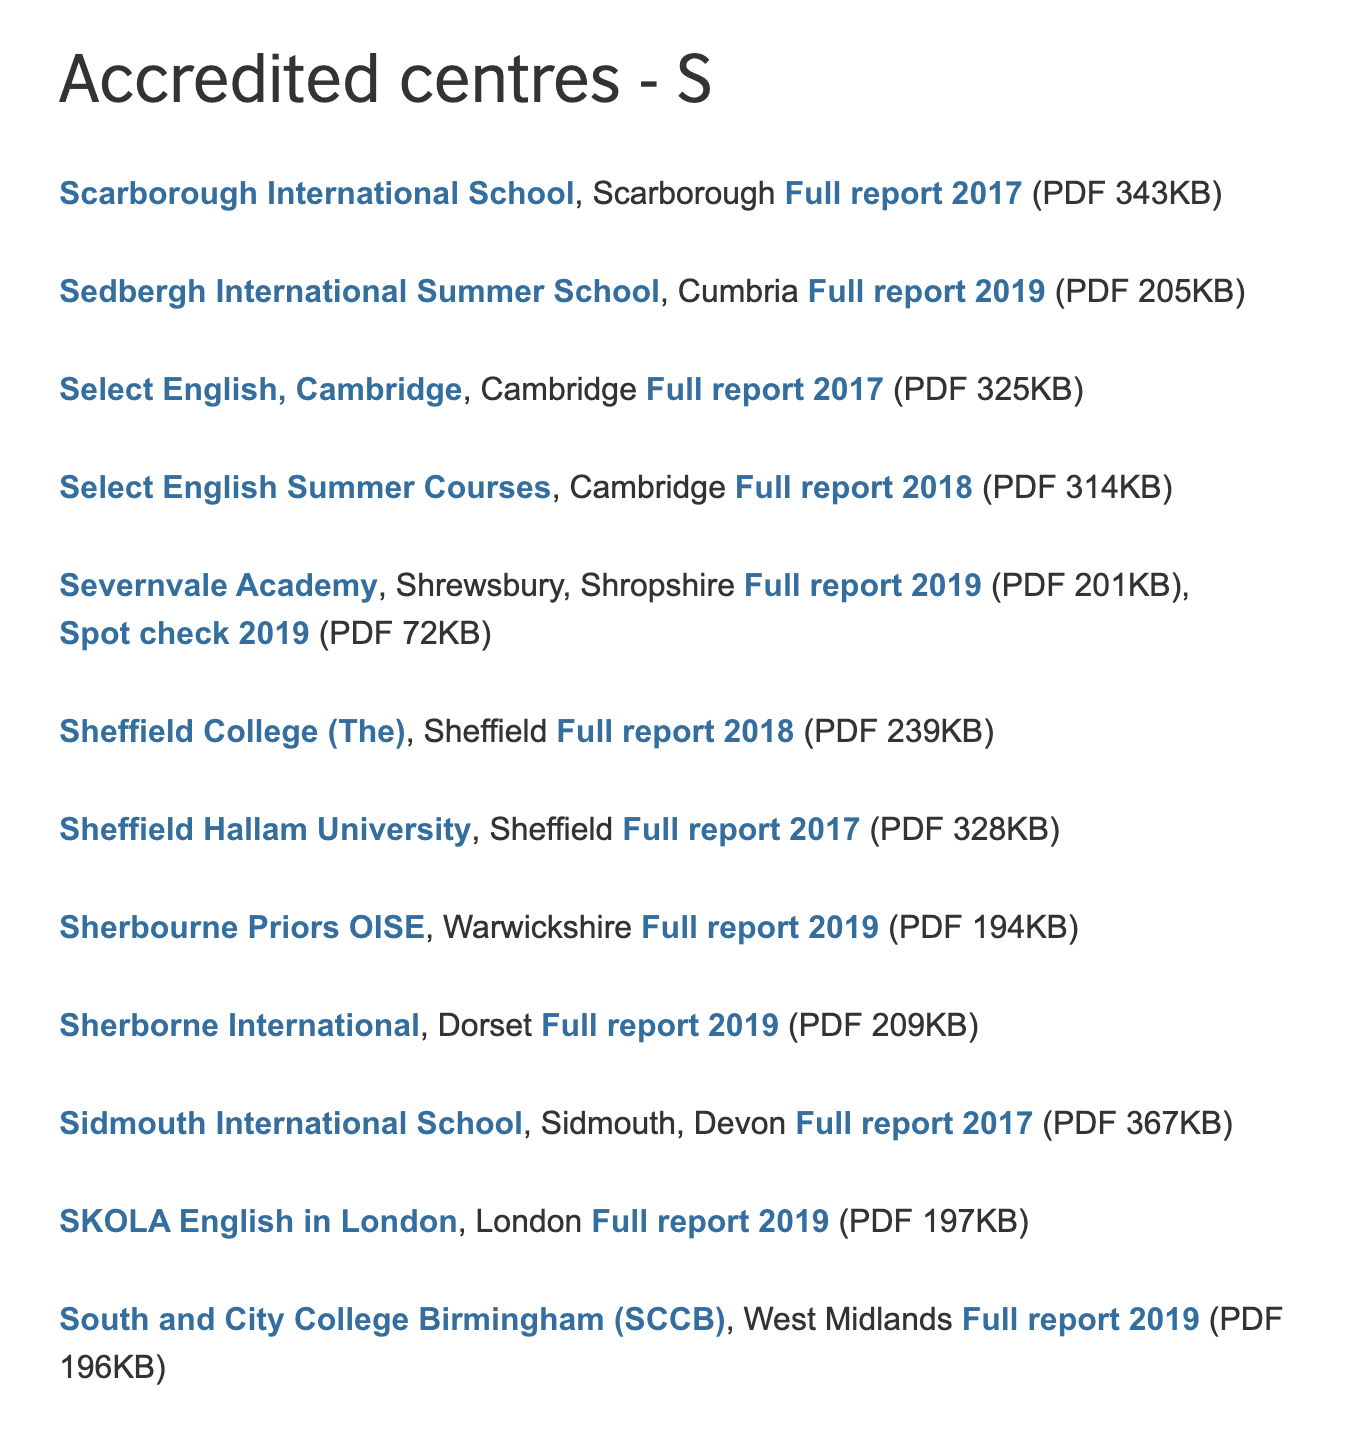 Список аккредитованных школ можно найти на сайте Британского совета